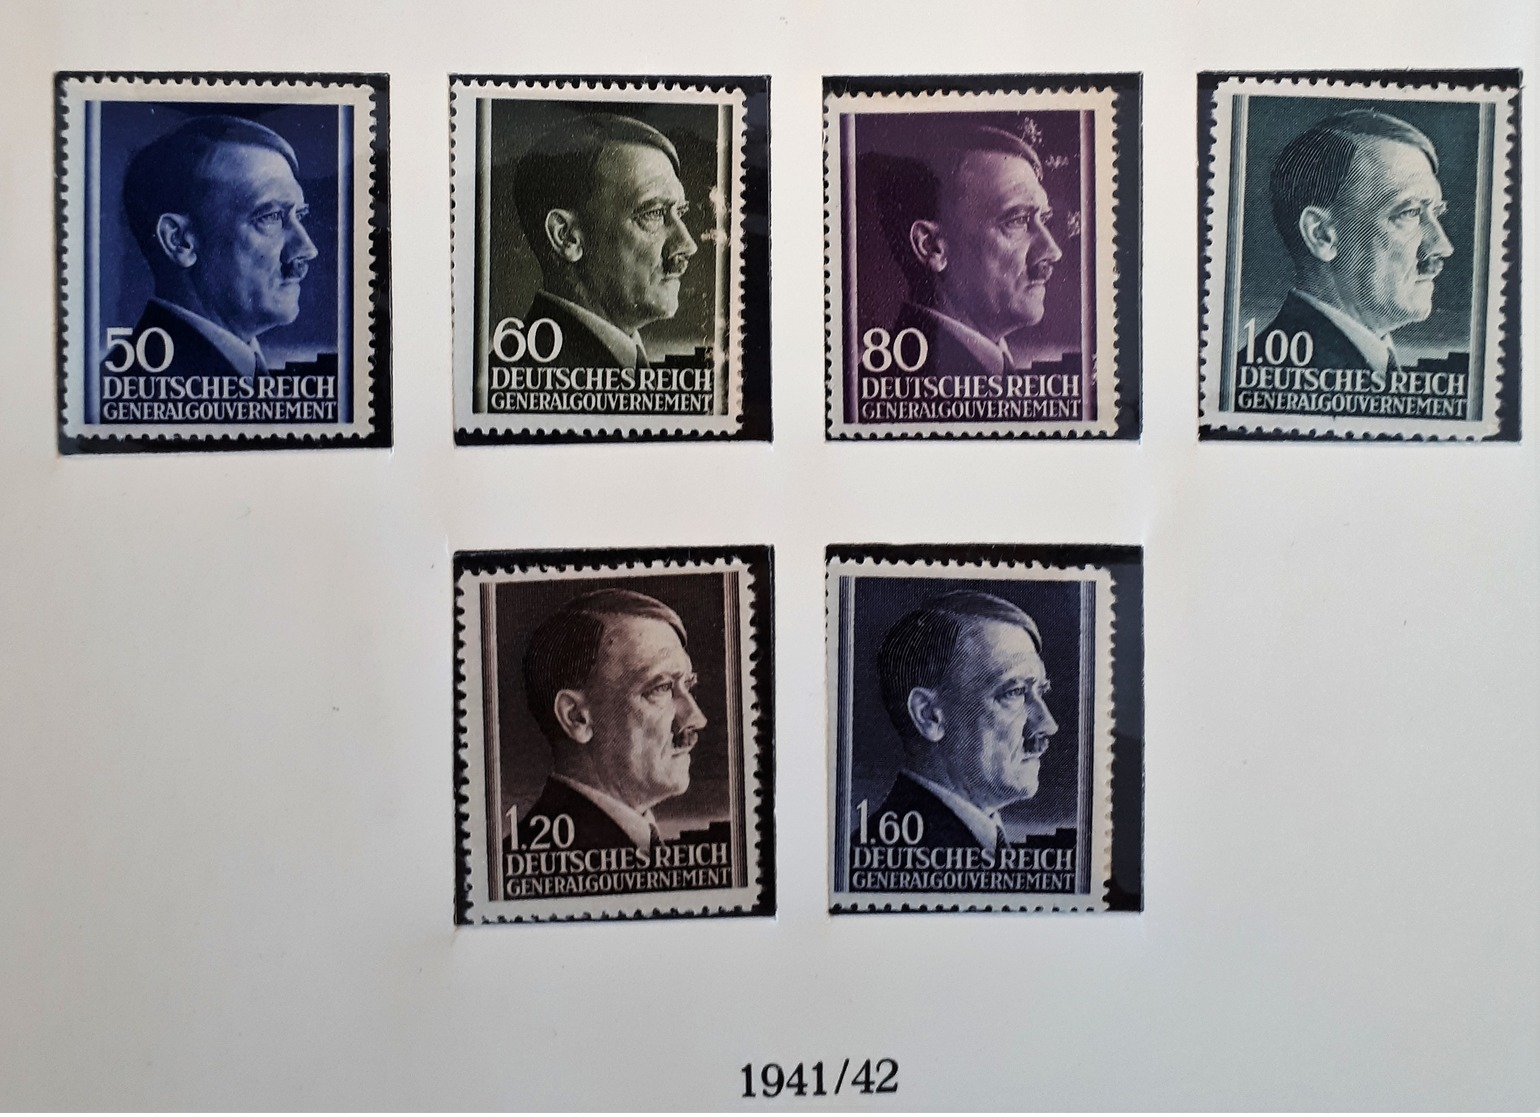 Poland - Occupation Stamps 1940/42 (General Gouvernement) - Generalregierung